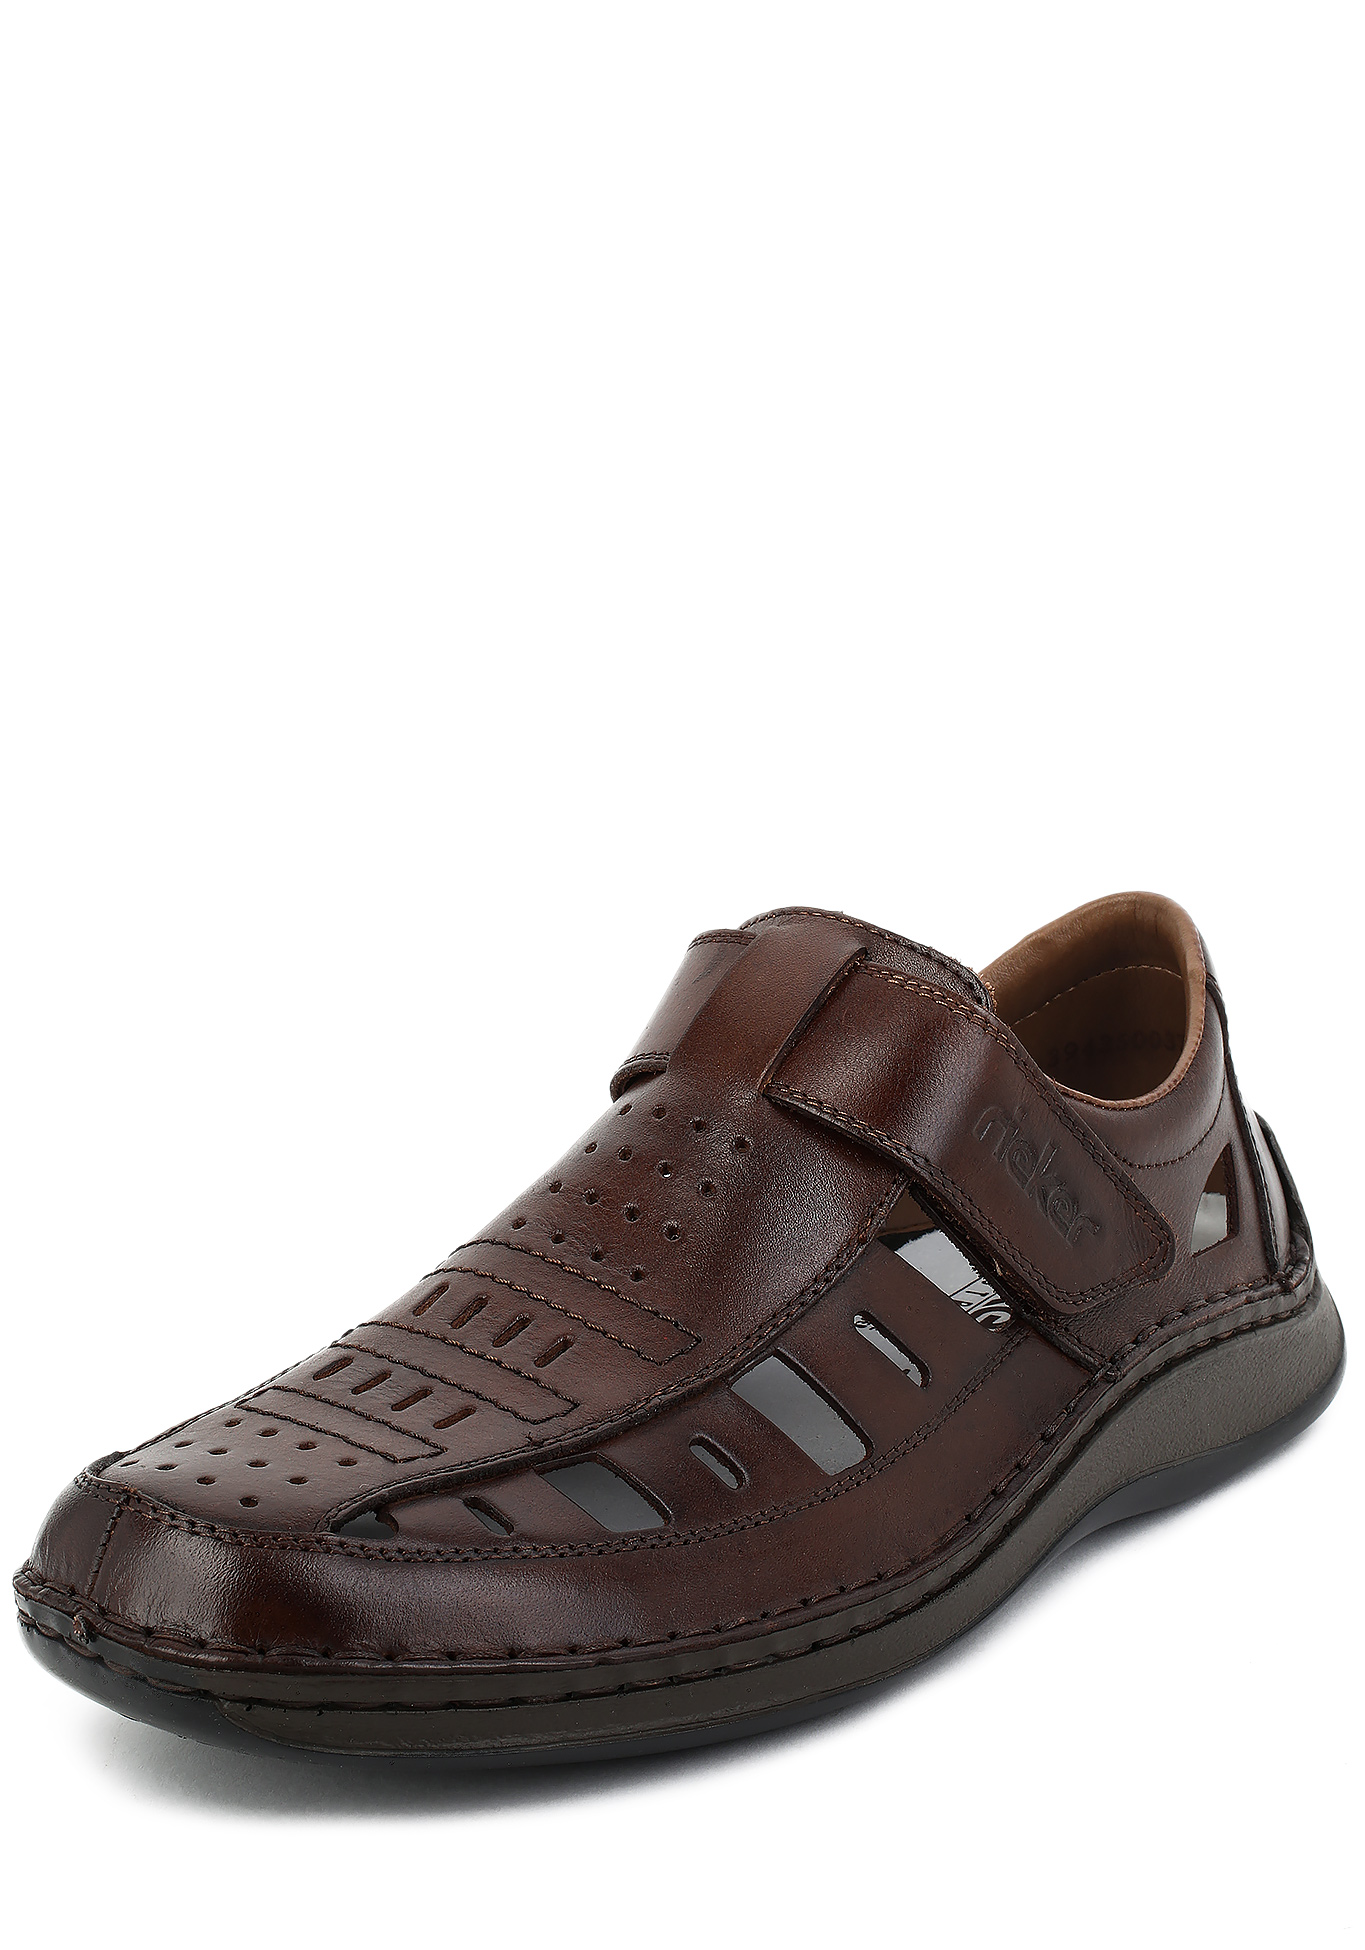 Туфли летние мужские "Алекс" Rieker, размер 40, цвет коричневый